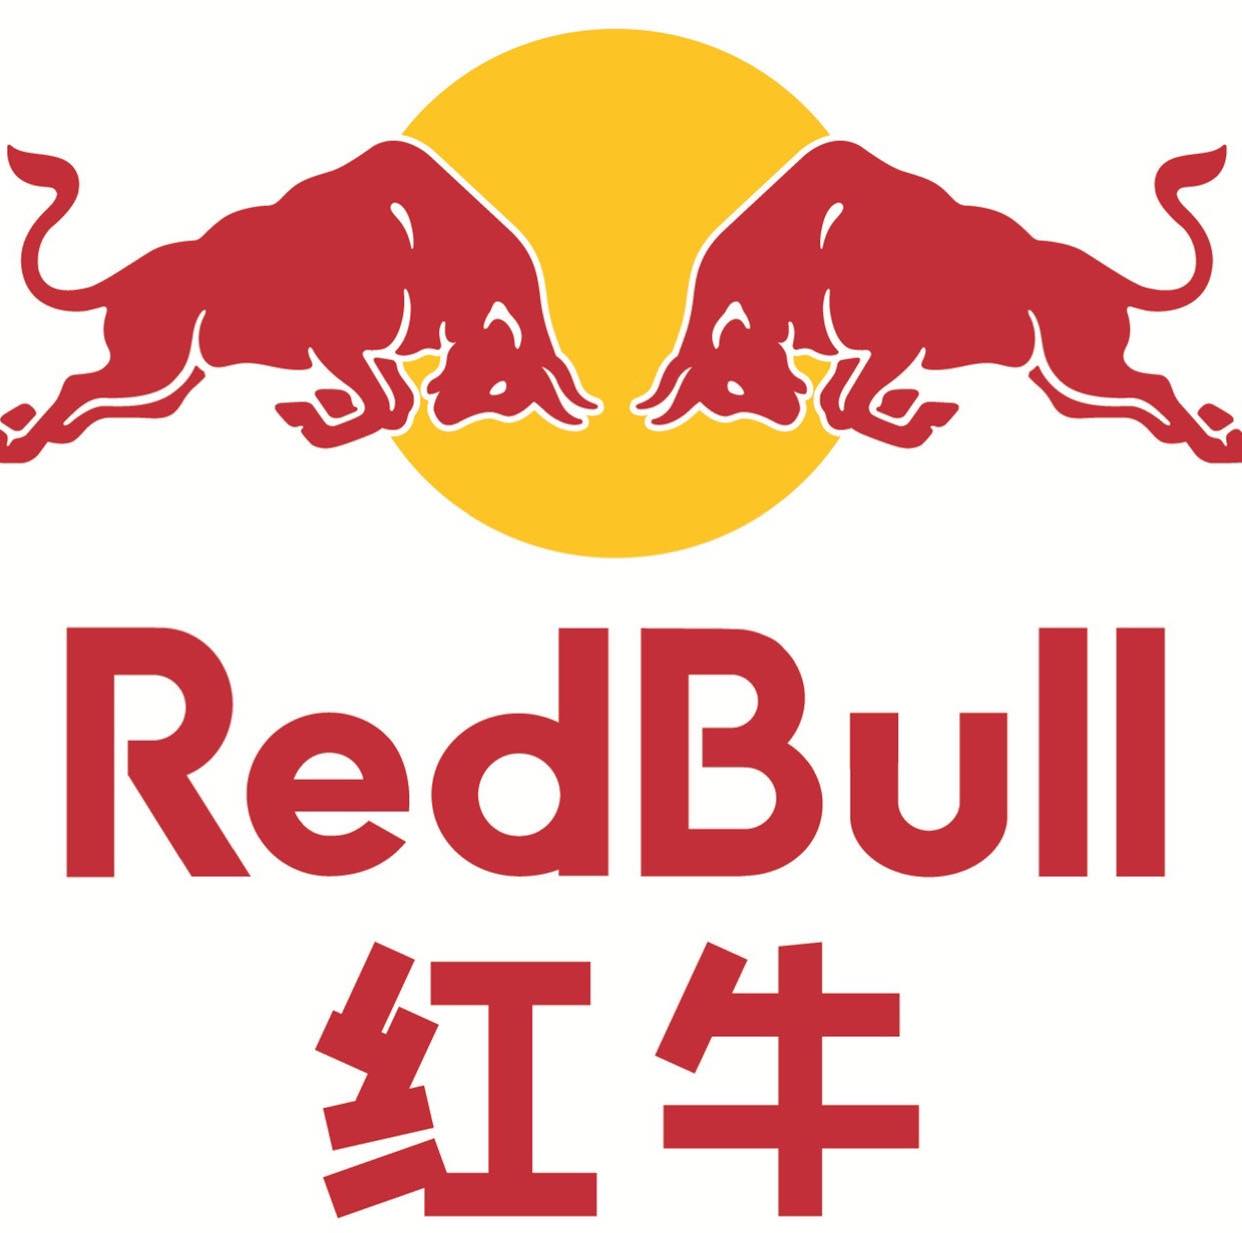 红牛logo高清图 图案图片